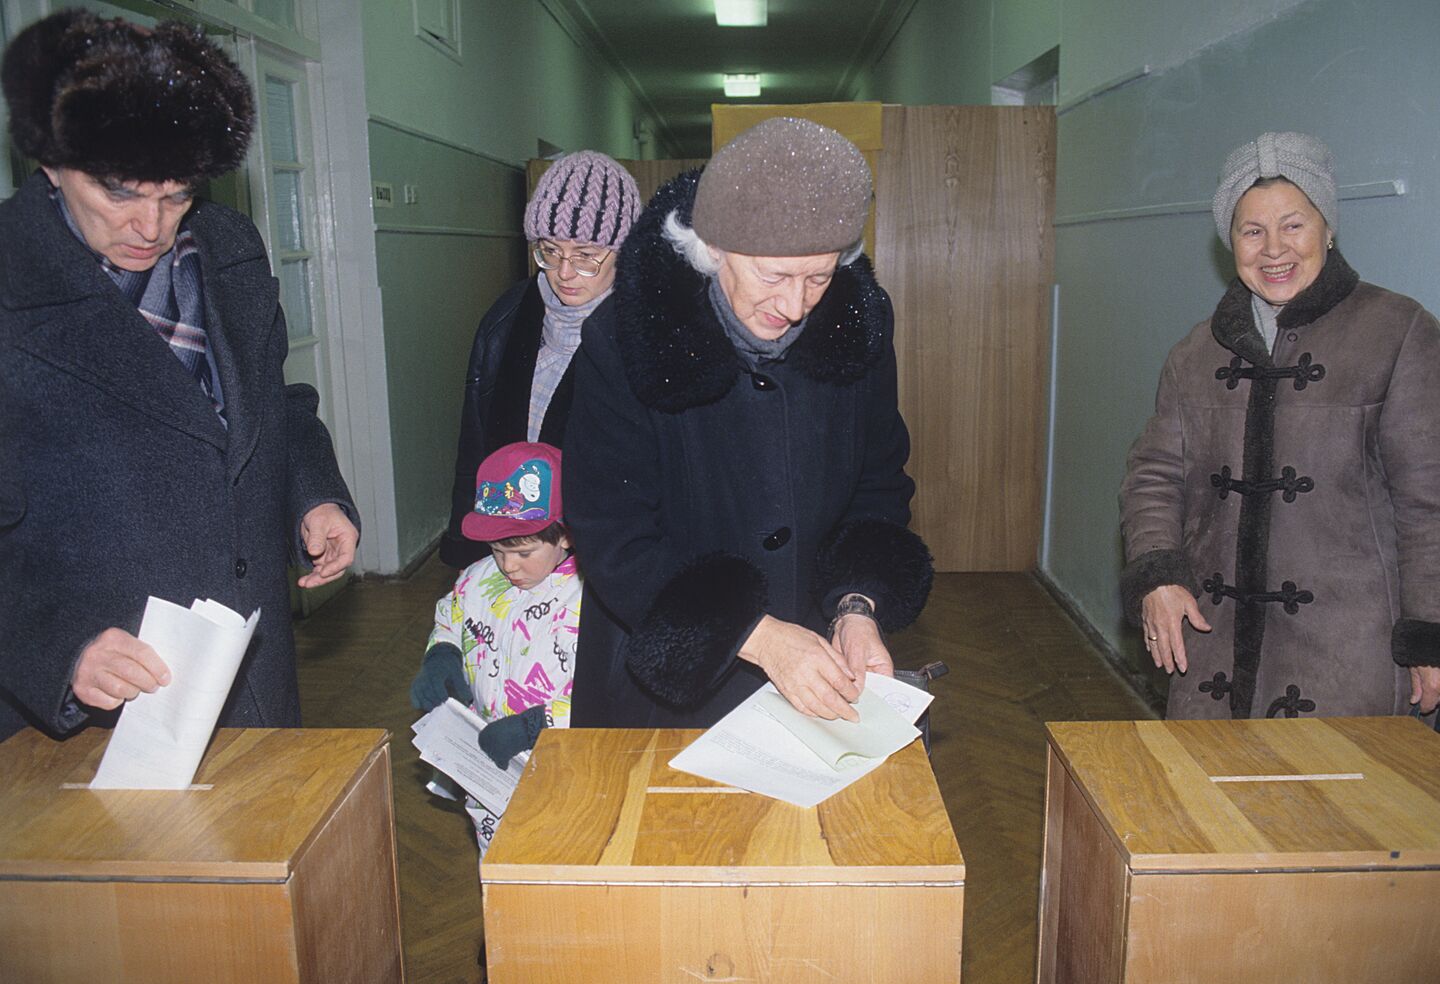 1993 год всенародное голосование